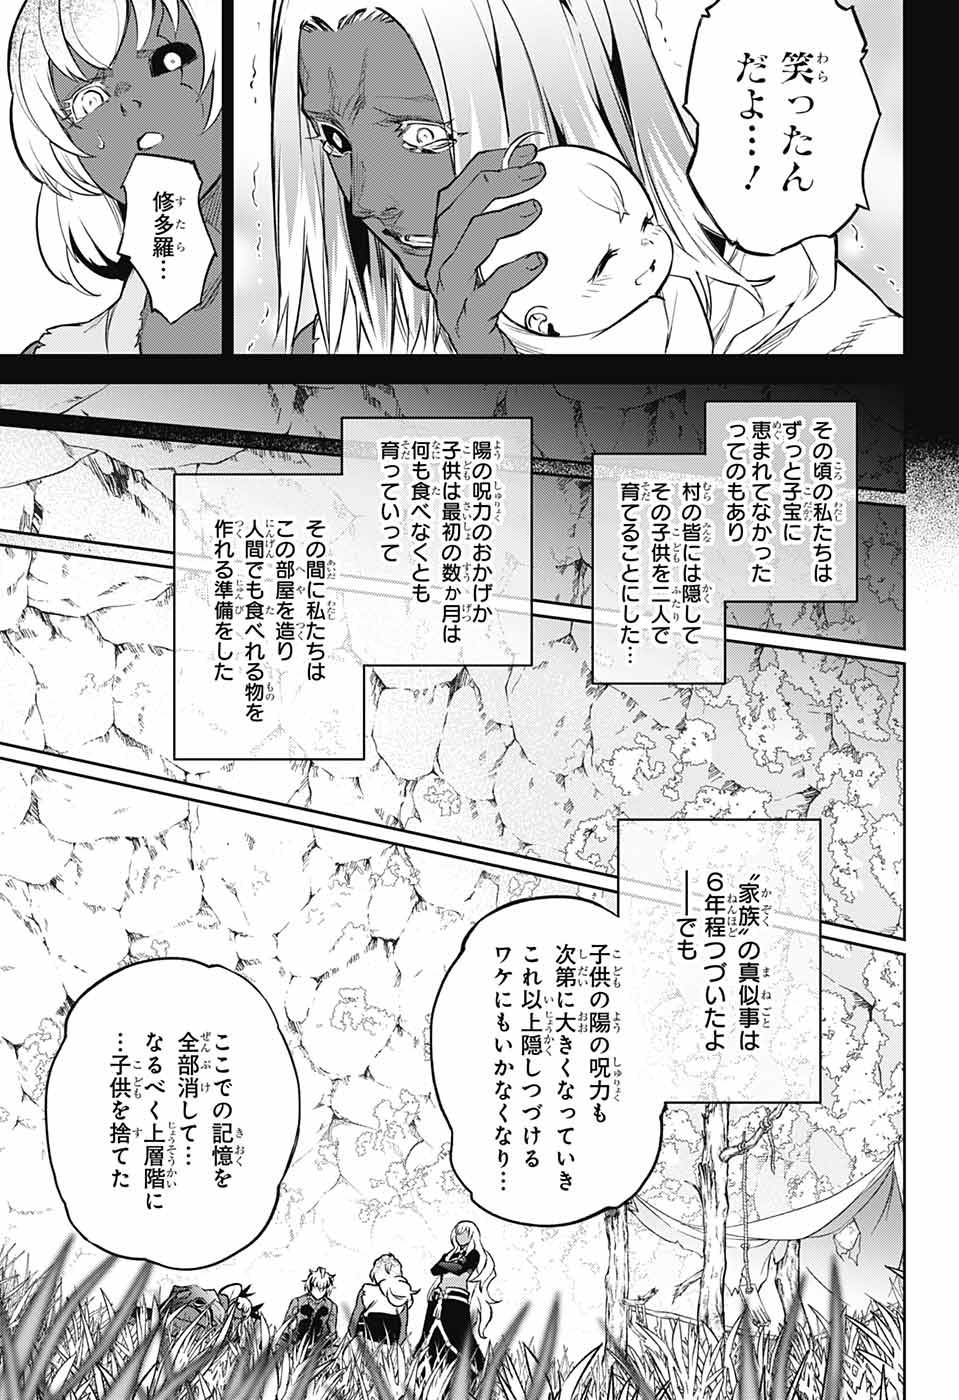 Sousei no Onmyouji - Chapter 104 - Page 45